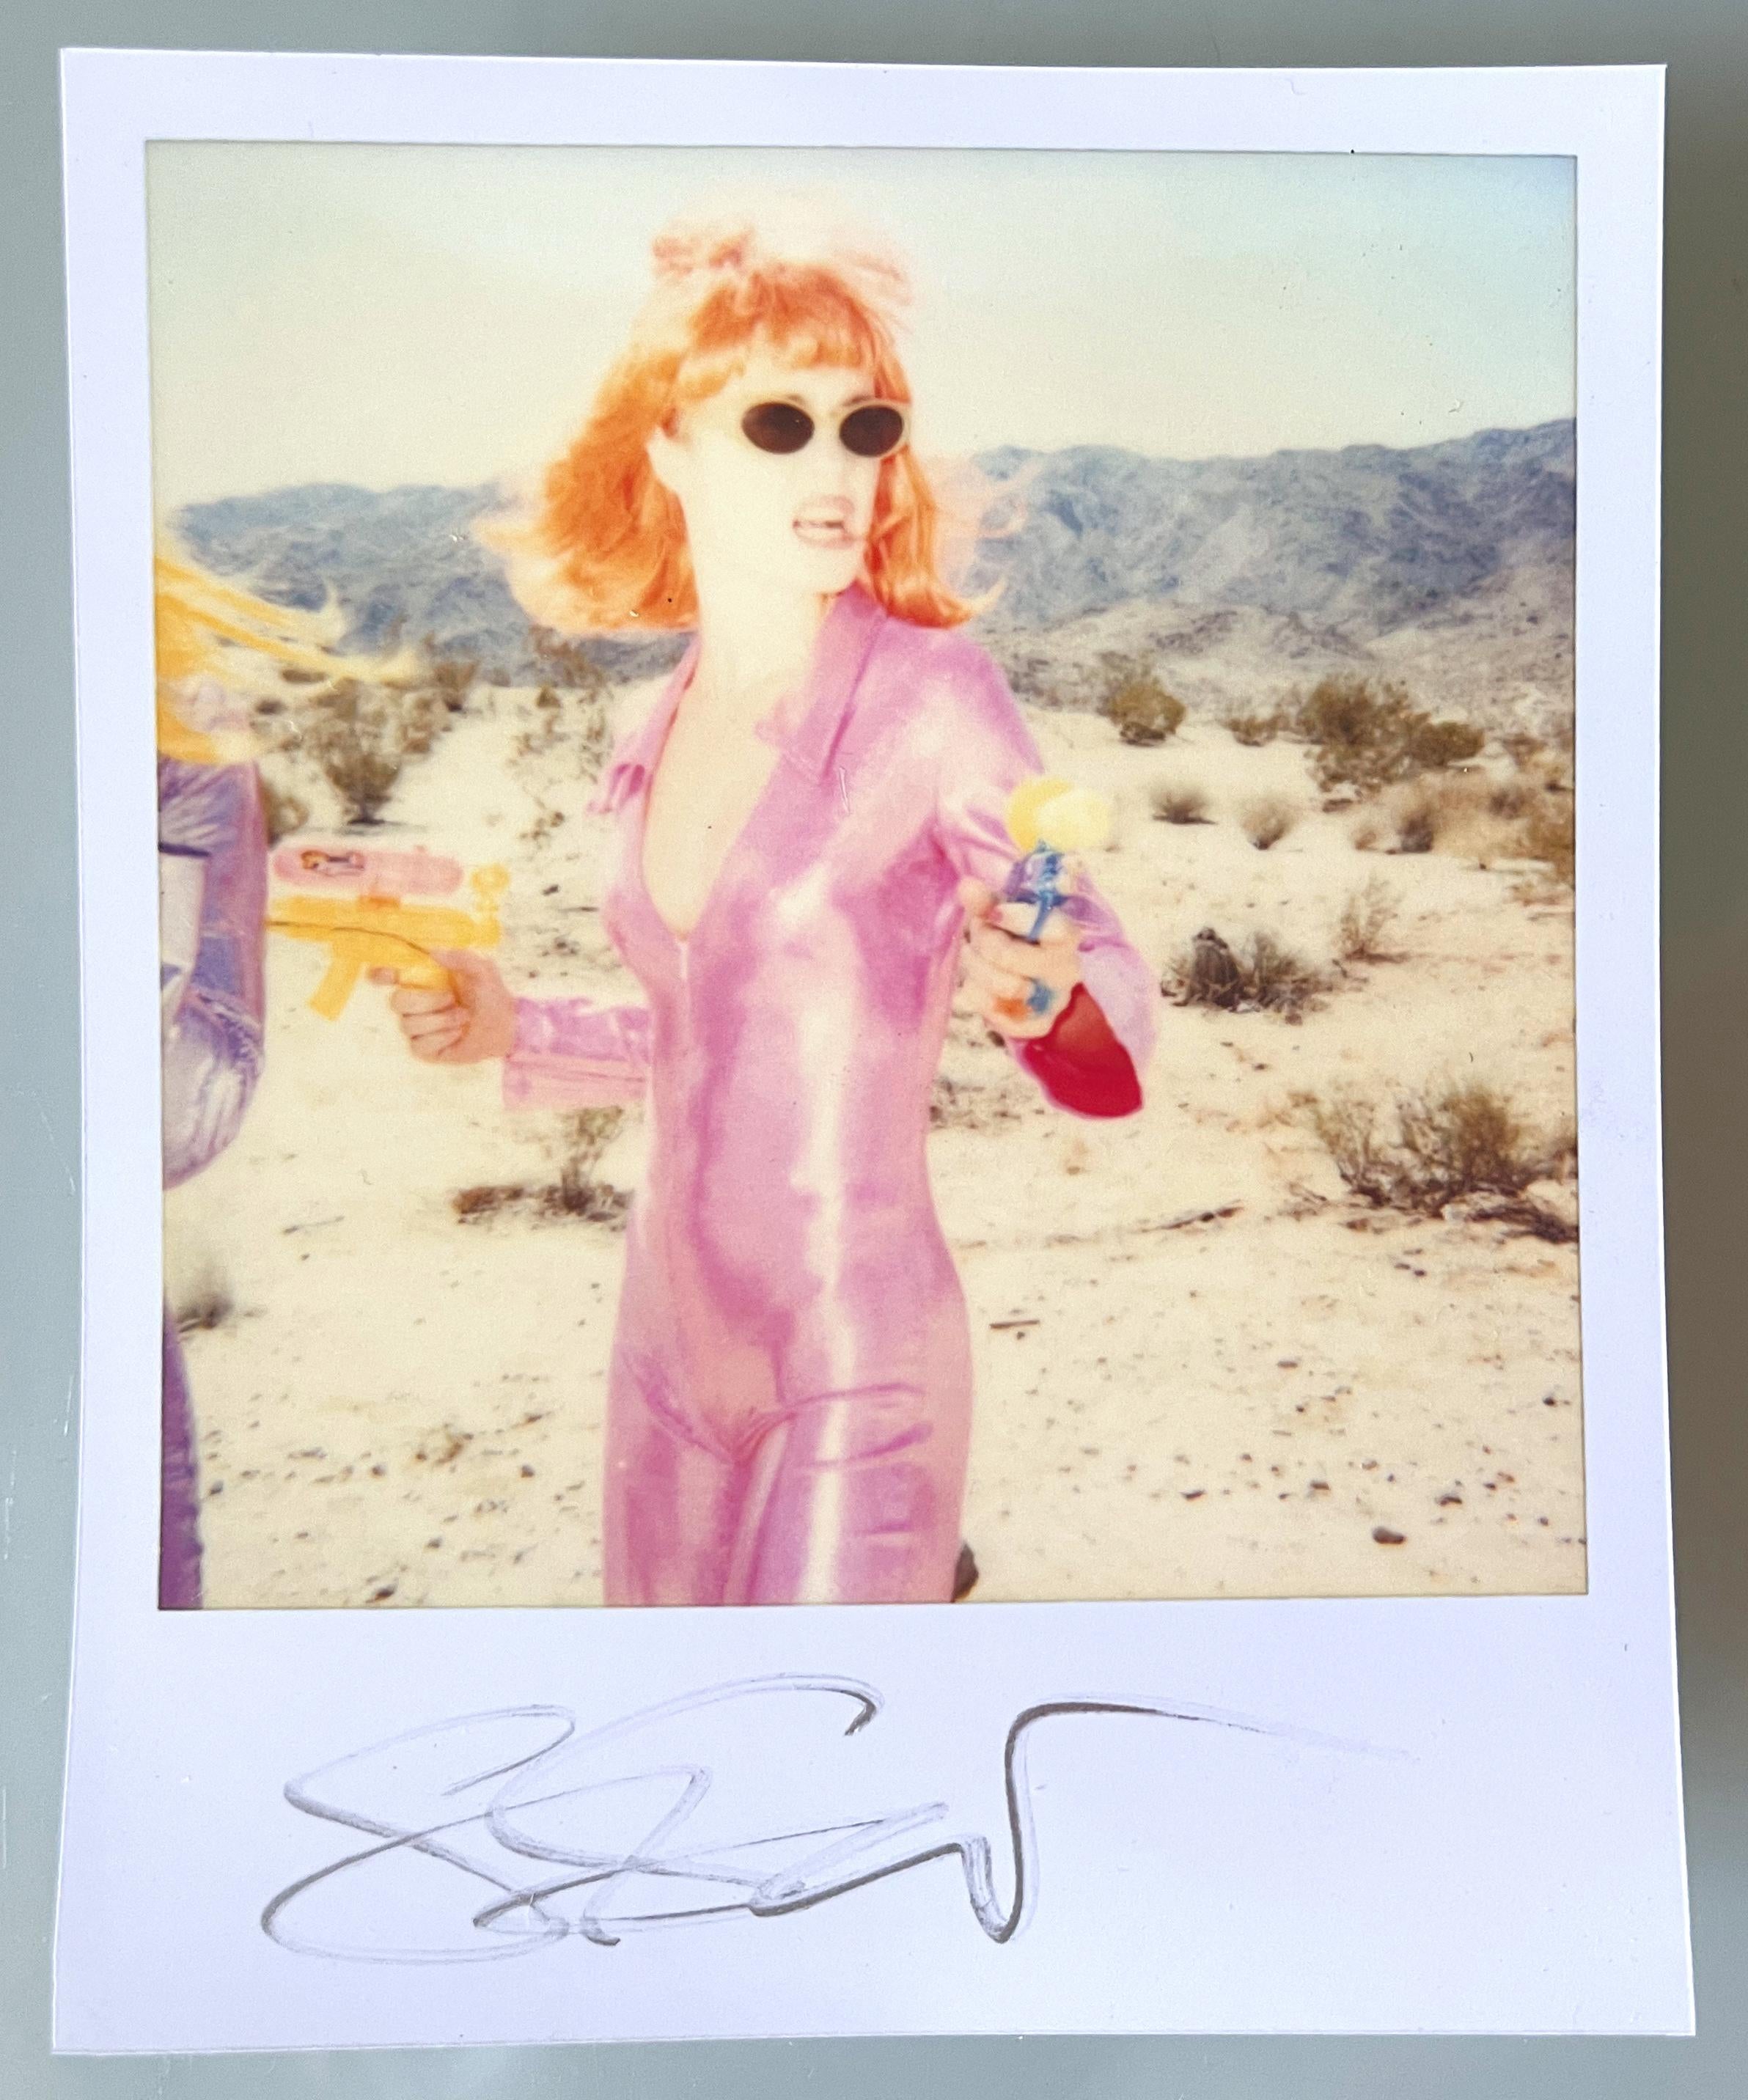 Stefanie Schneider Polaroid sized unlimited Mini 'Radha Shooting' (Long Way Home) - 1999 -. 

signé au recto, non monté. 
1 Photographies numériques en couleurs basées sur un polaroïd. 

Éditions ouvertes au format polaroïd 1999-2016
10,7 x 8,8 cm